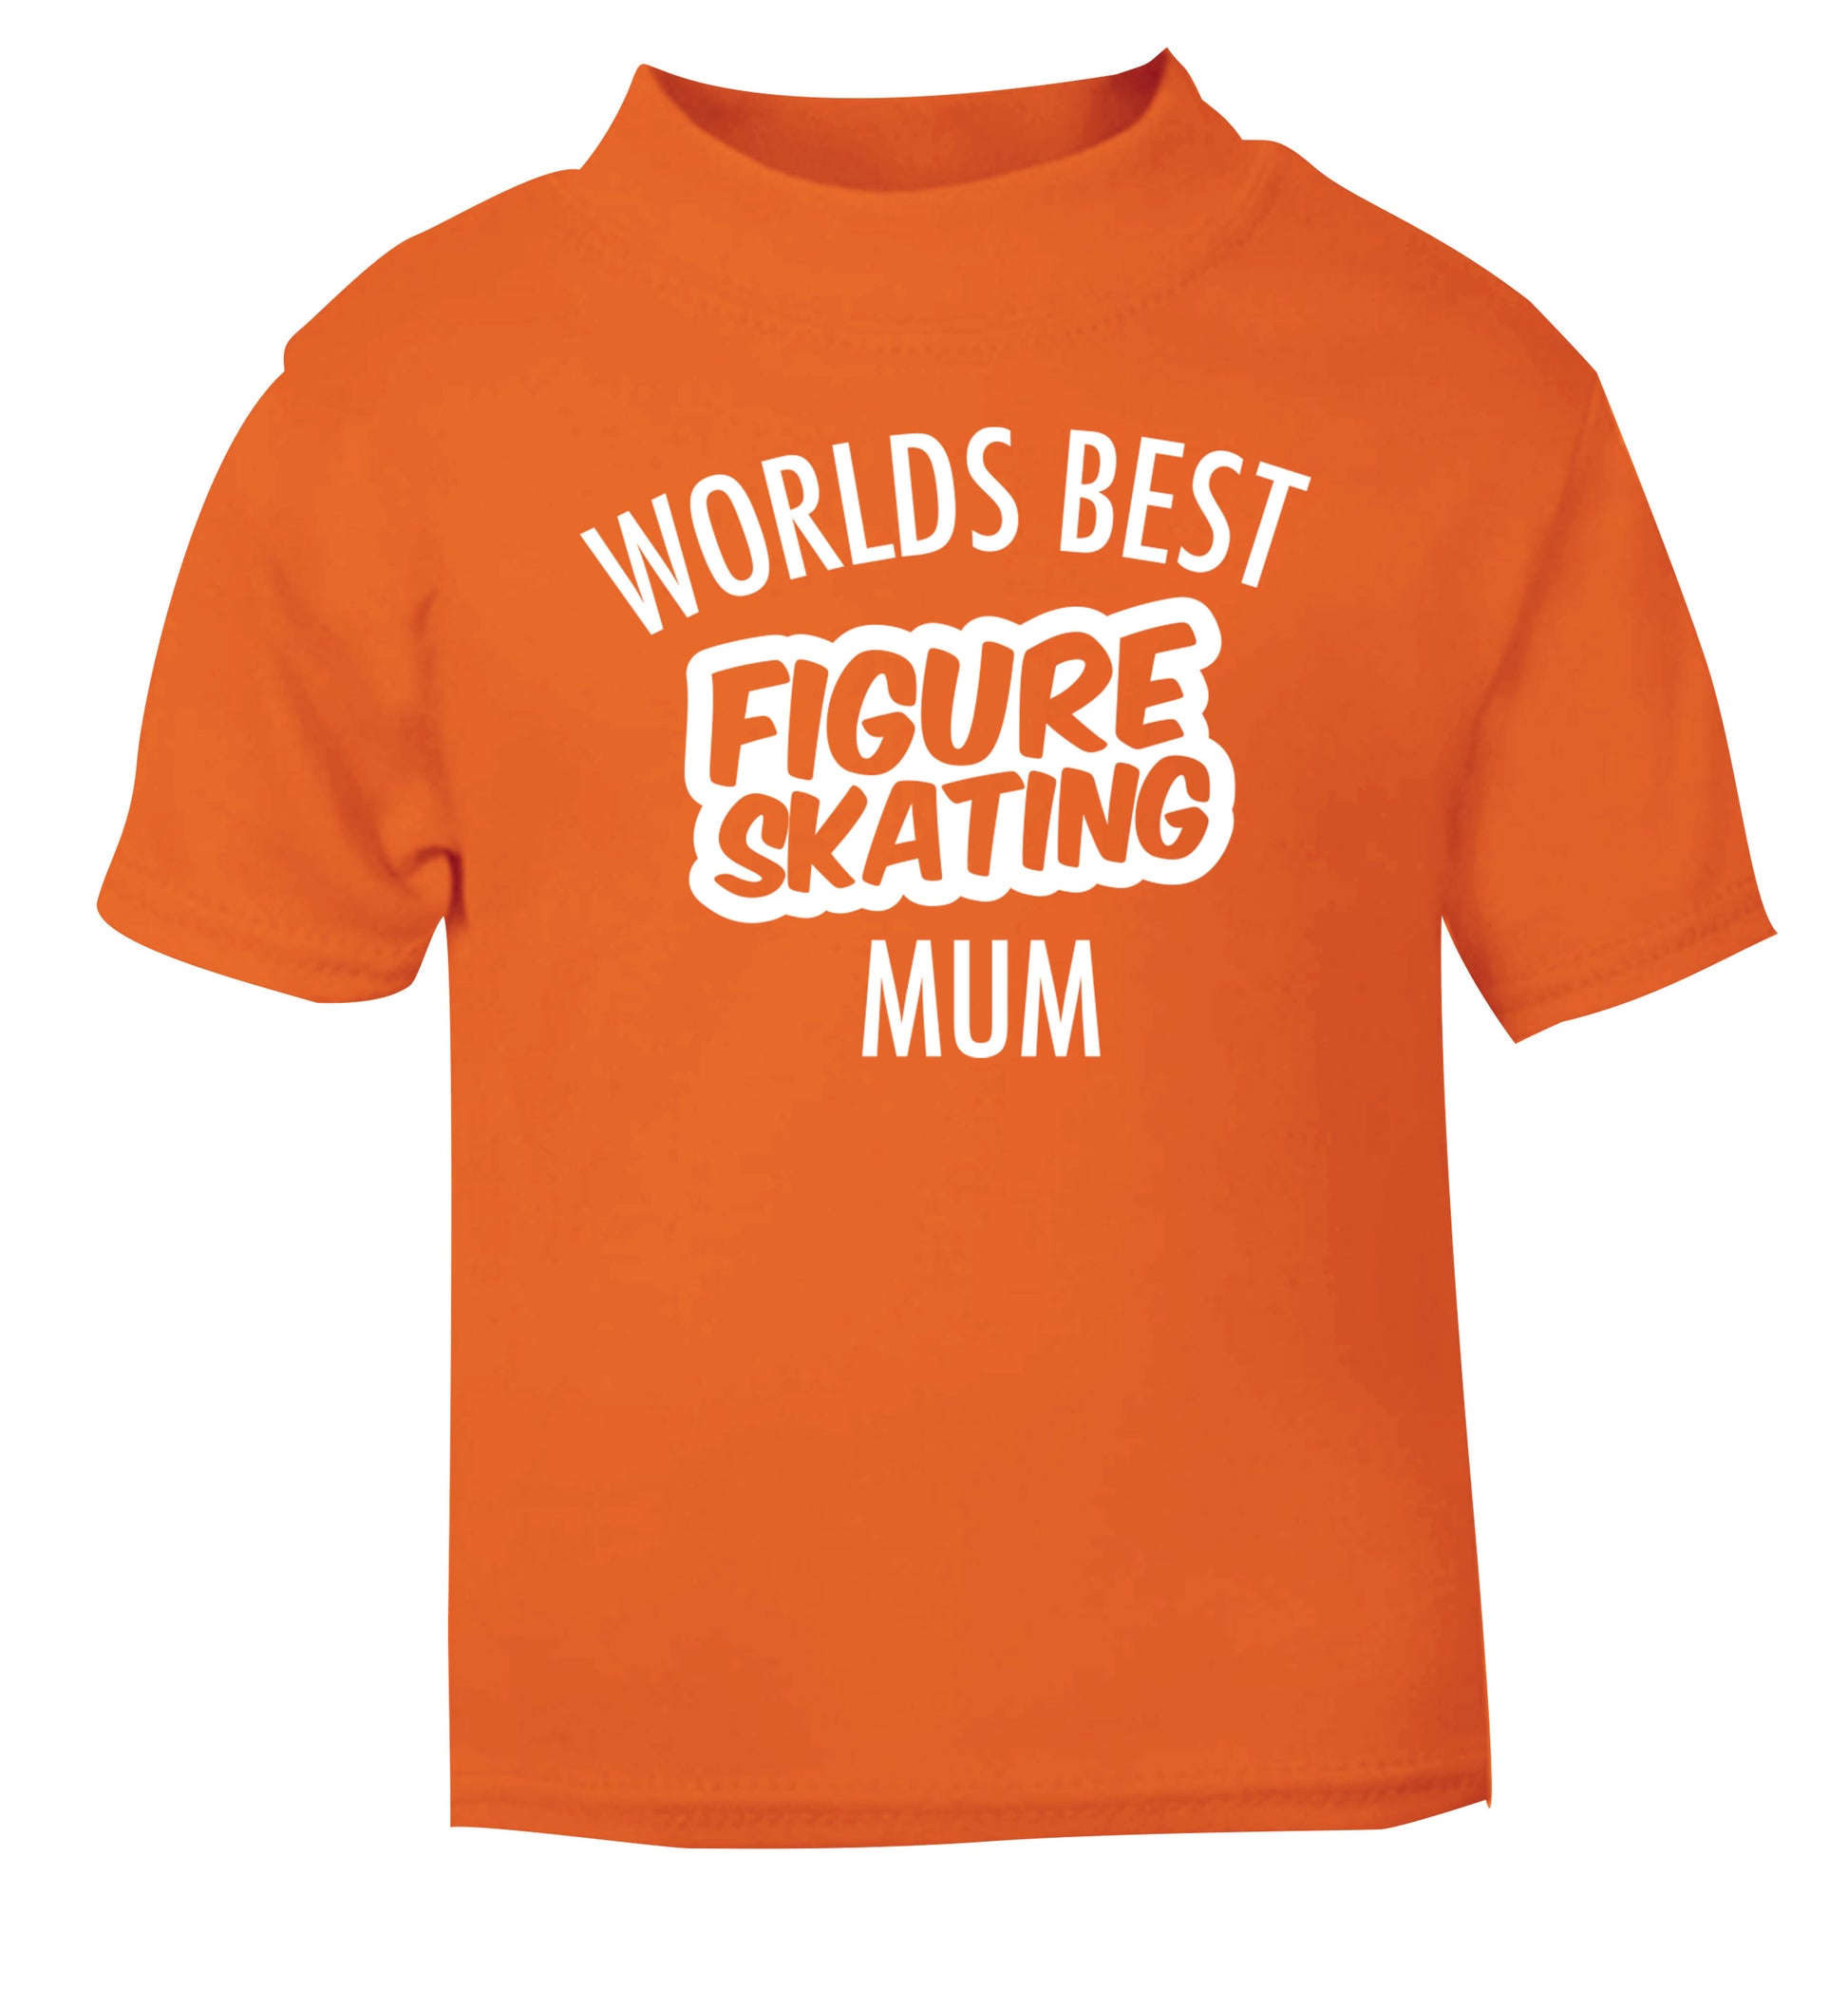 Worlds best figure skating mum orange Baby Toddler Tshirt 2 Years